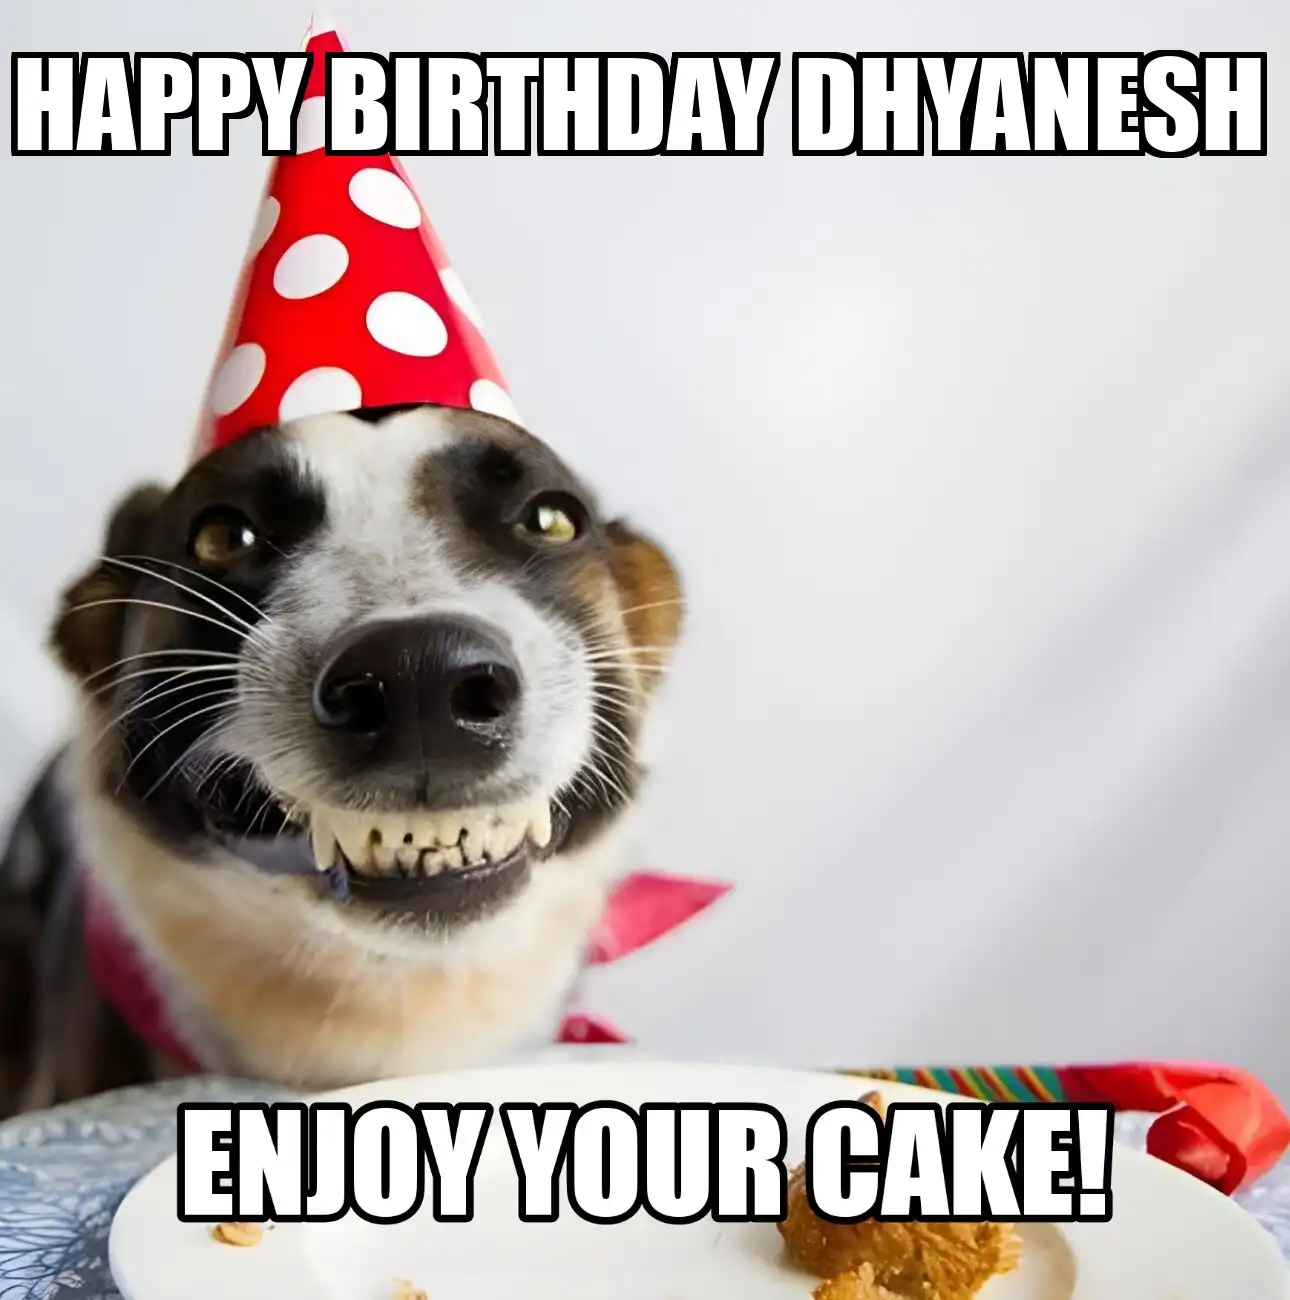 Happy Birthday Dhyanesh Enjoy Your Cake Dog Meme